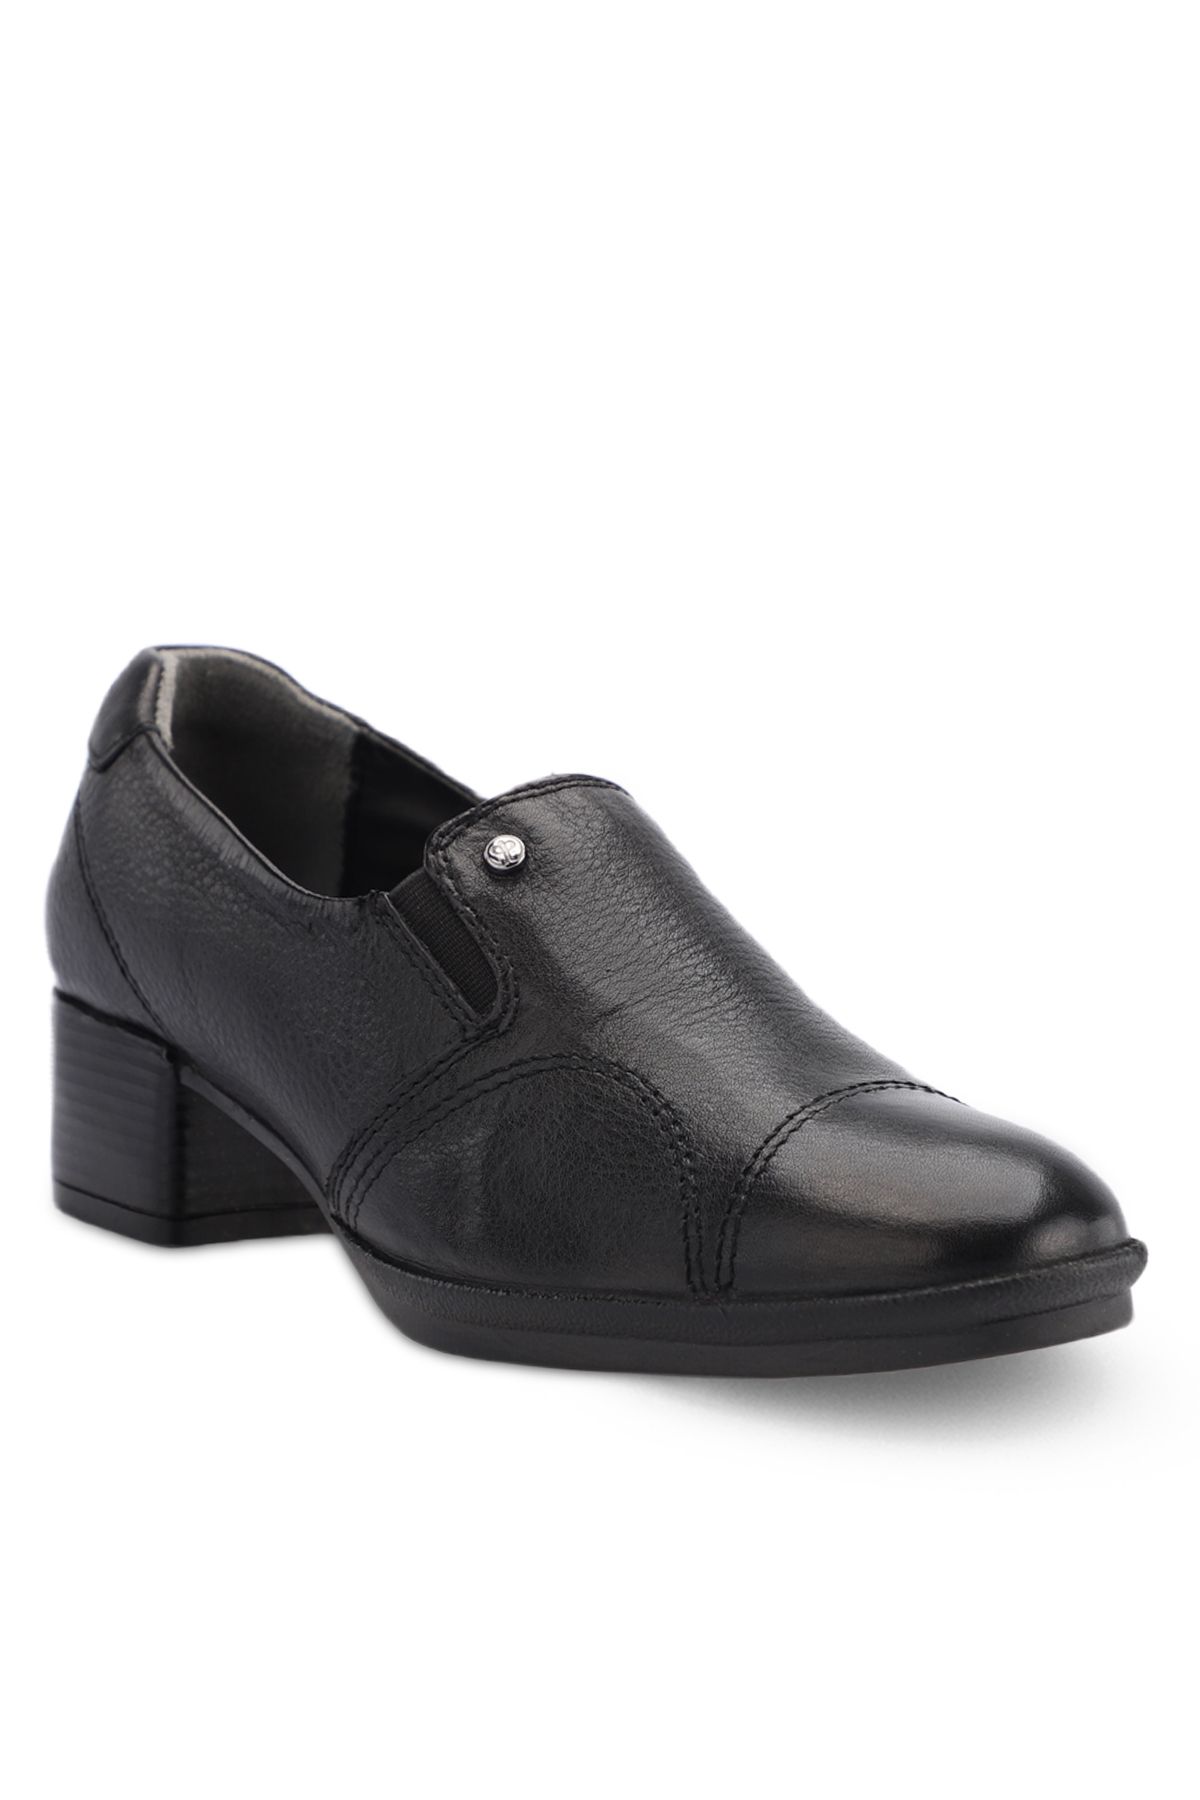 Forelli PILOYD-G Comfort Kadın Ayakkabı Siyah